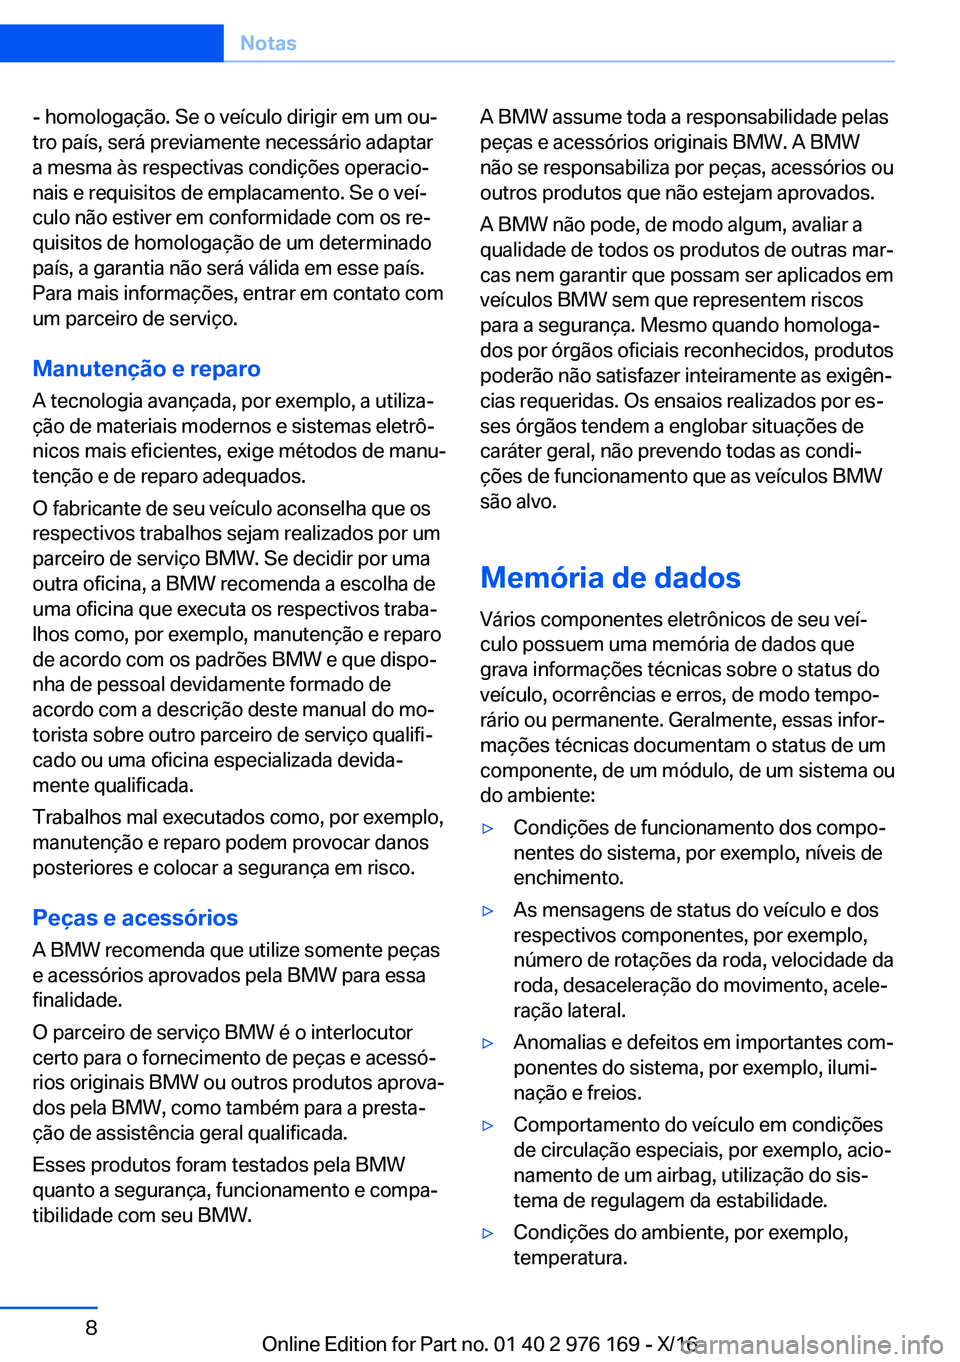 BMW X5 M 2017  Manual do condutor (in Portuguese) �-� �h�o�m�o�l�o�g�a�ç�ã�o�.� �S�e� �o� �v�e�í�c�u�l�o� �d�i�r�i�g�i�r� �e�m� �u�m� �o�uª�t�r�o� �p�a�í�s�,� �s�e�r�á� �p�r�e�v�i�a�m�e�n�t�e� �n�e�c�e�s�s�á�r�i�o� �a�d�a�p�t�a�r
�a� �m�e�s�m